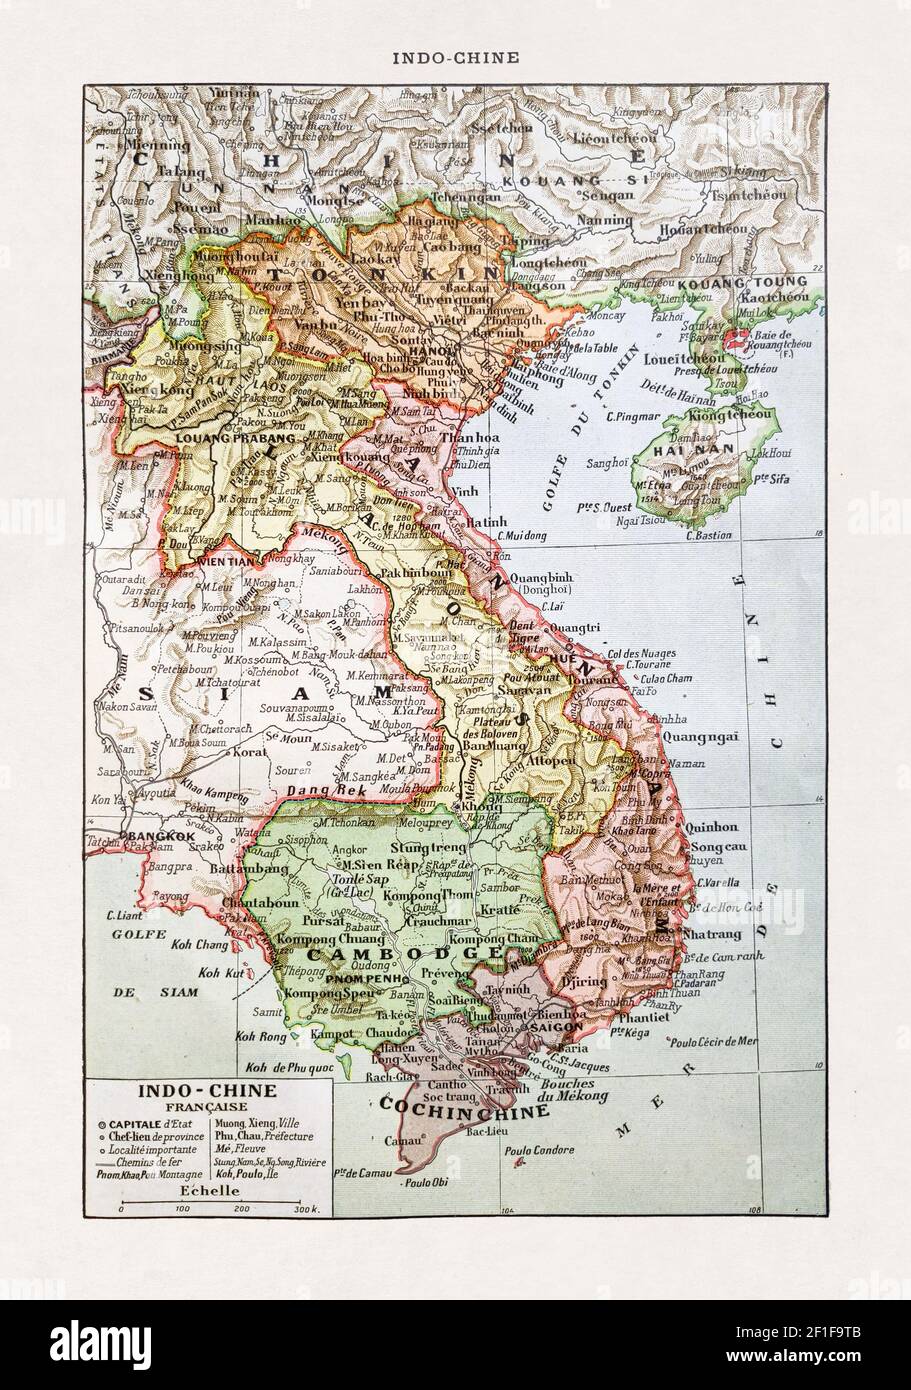 Antiguo mapa de Indochina impreso en el diccionario francés 'Dictionnaire complet illustré' por el editor Larousse en 1889. Foto de stock